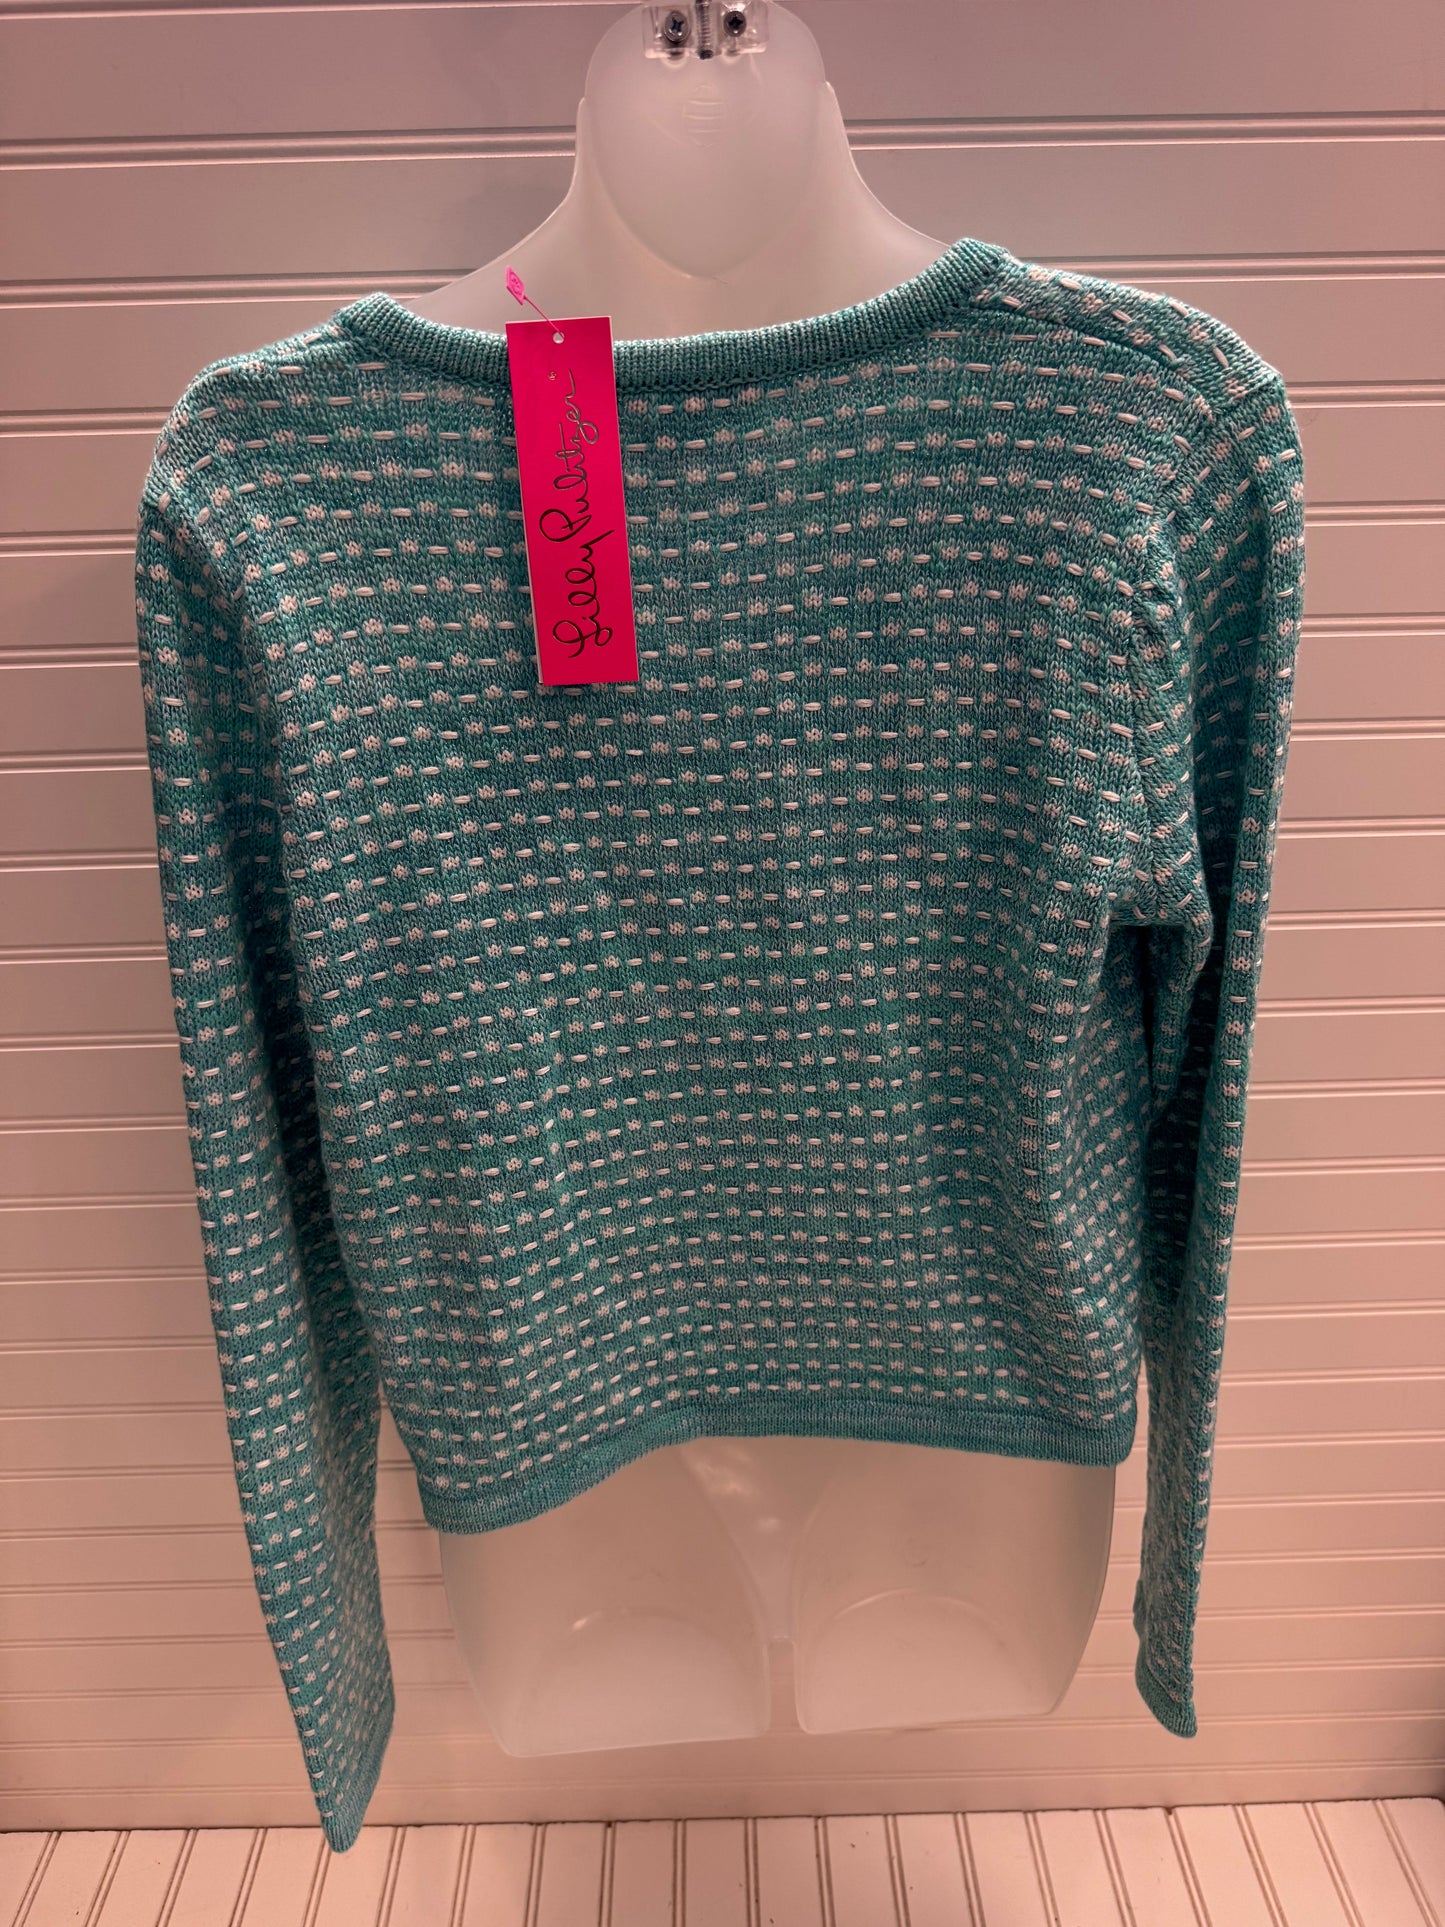 Aqua Sweater Cardigan Designer Lilly Pulitzer, Size M